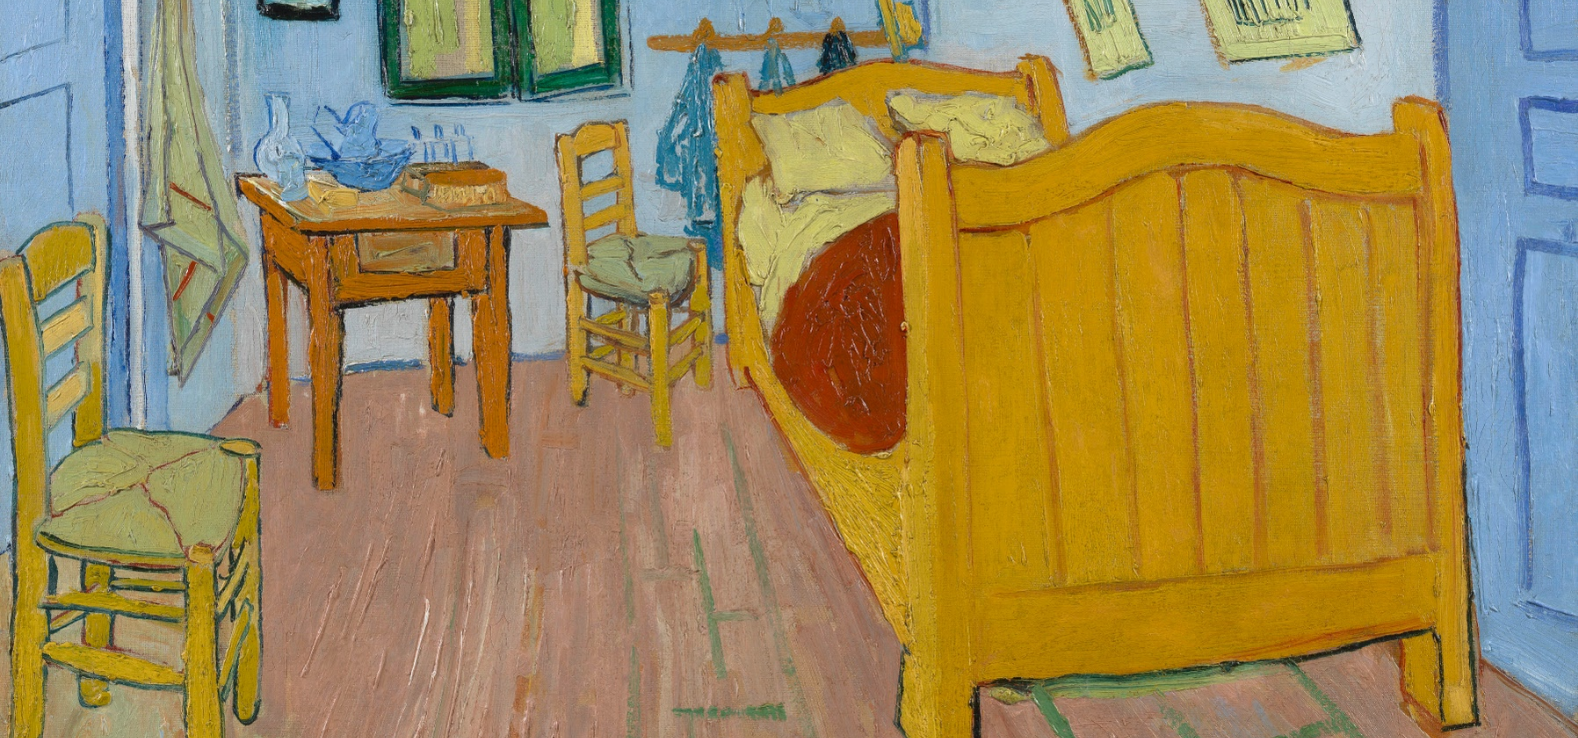 Vincent van Gogh (1853 - 1890), Arles, October 1888